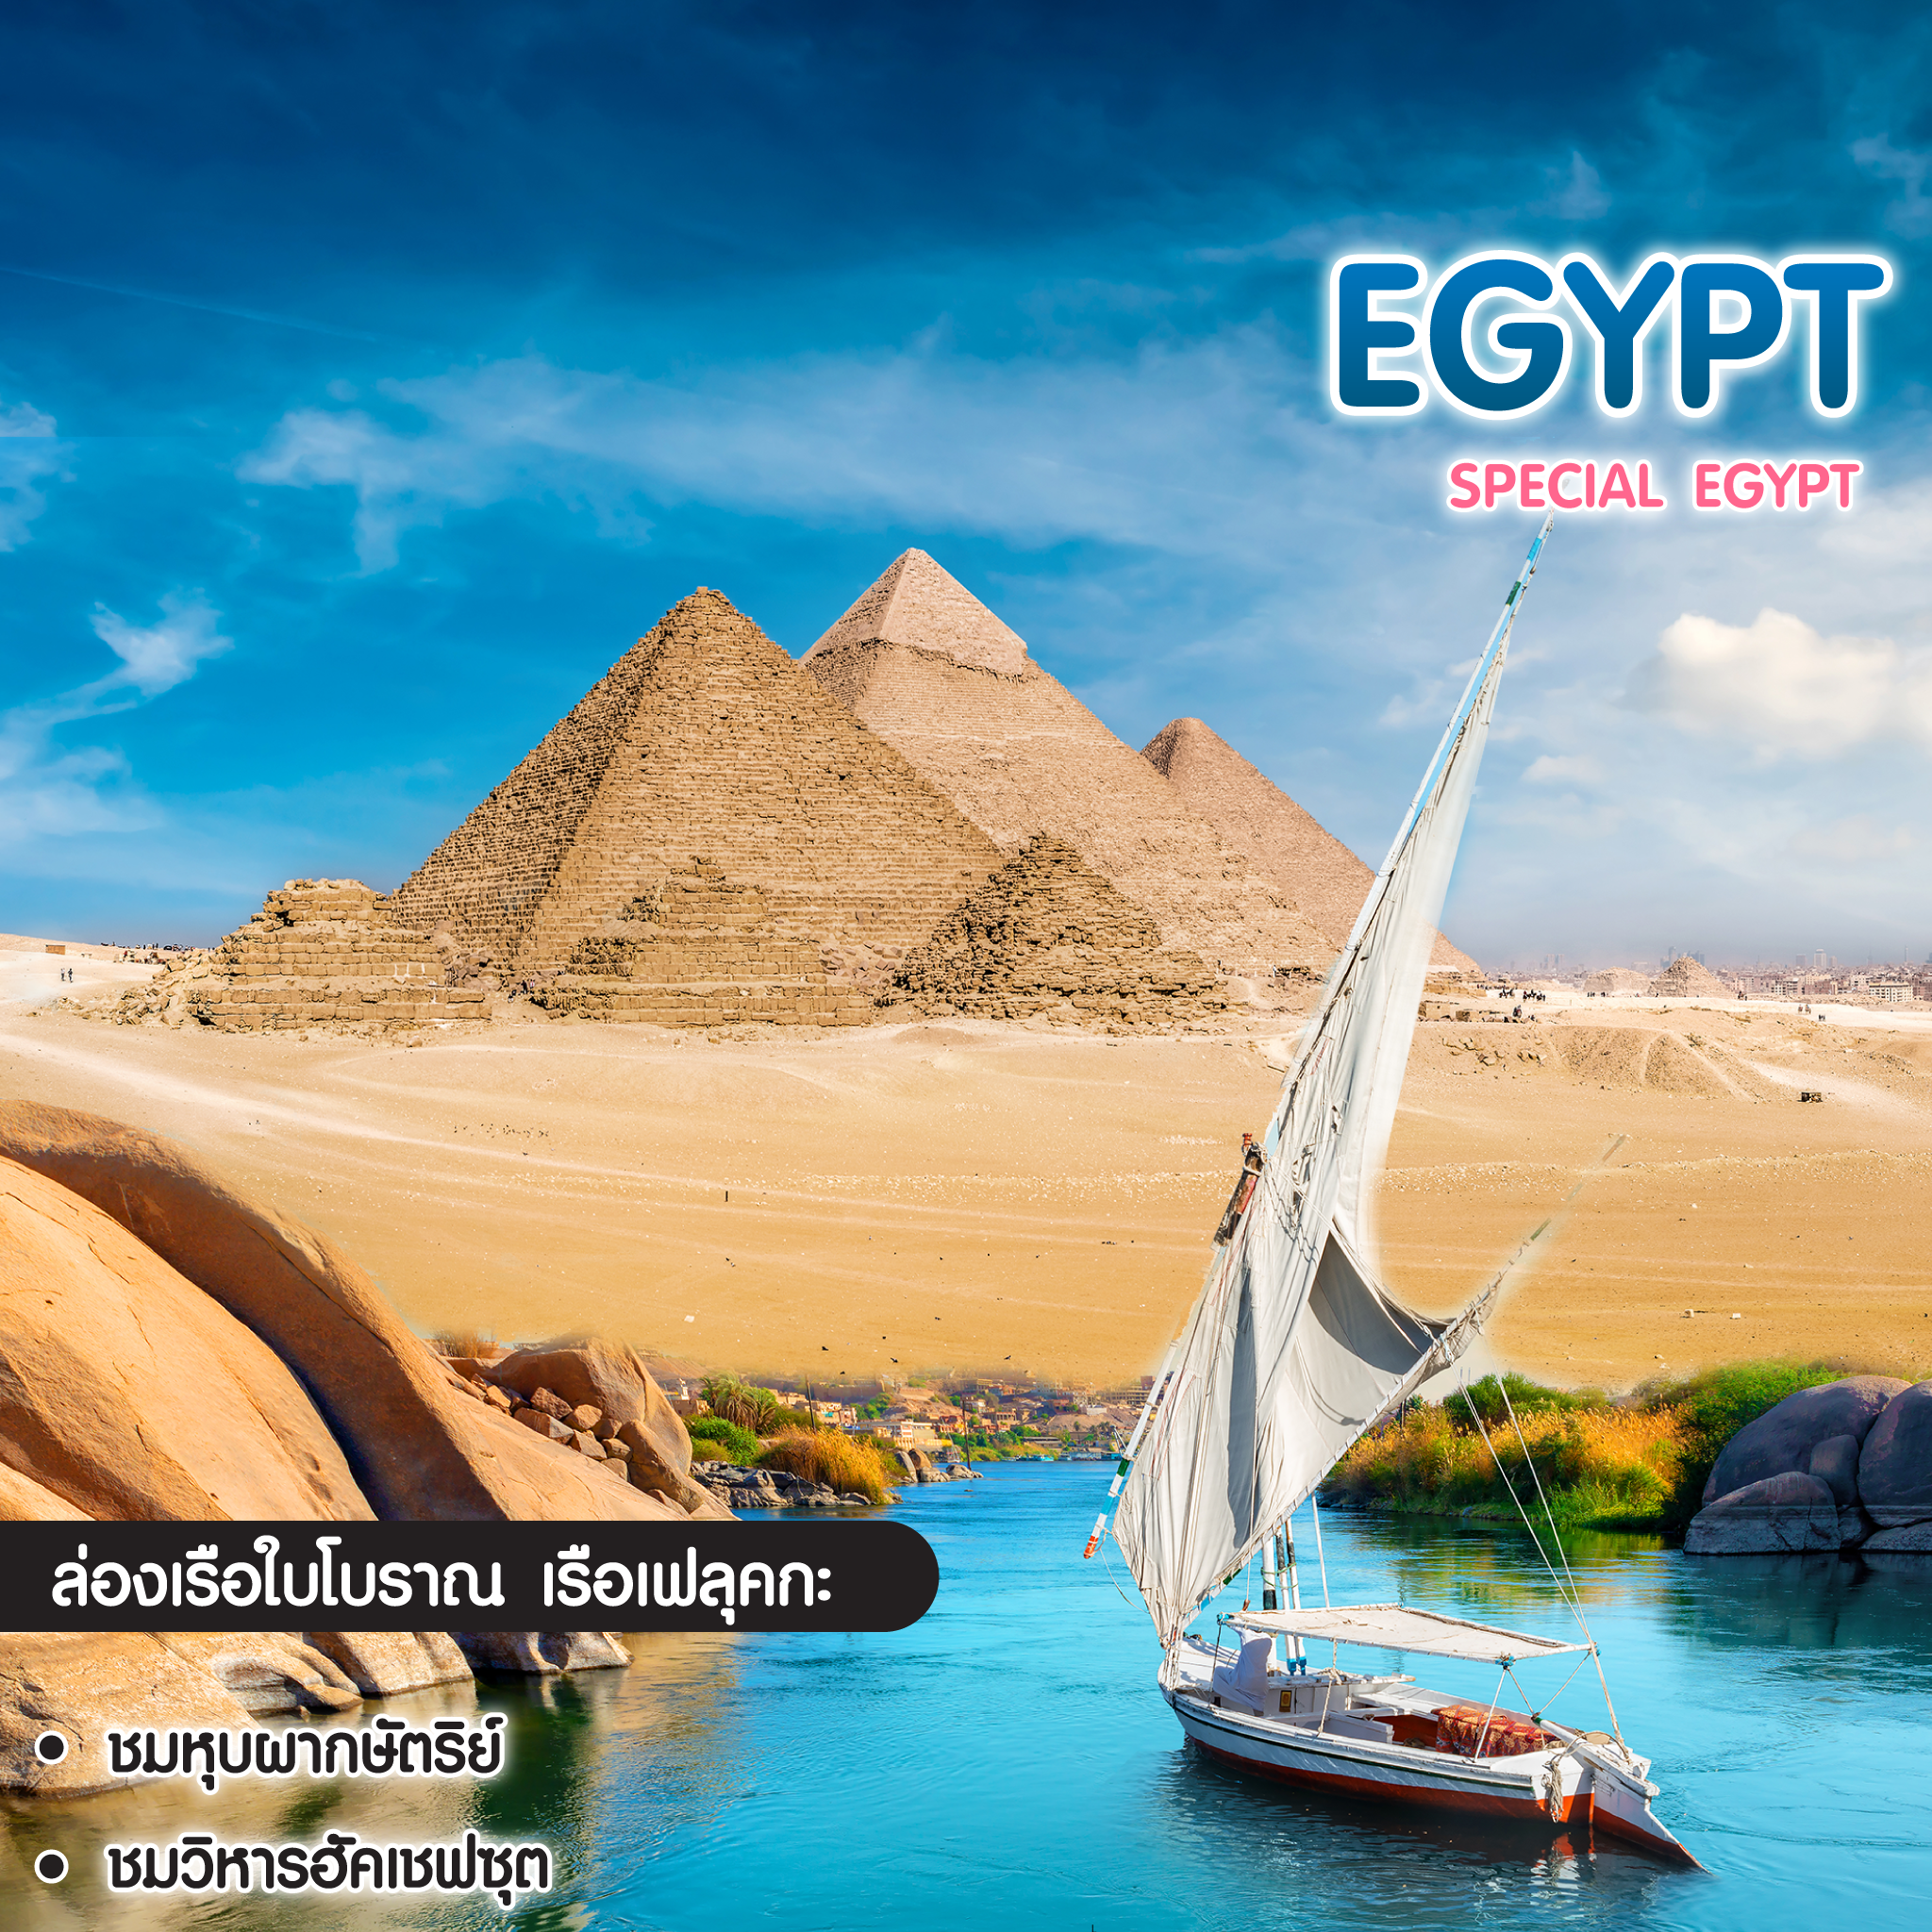 ทัวร์อียิปต์ Special Egypt